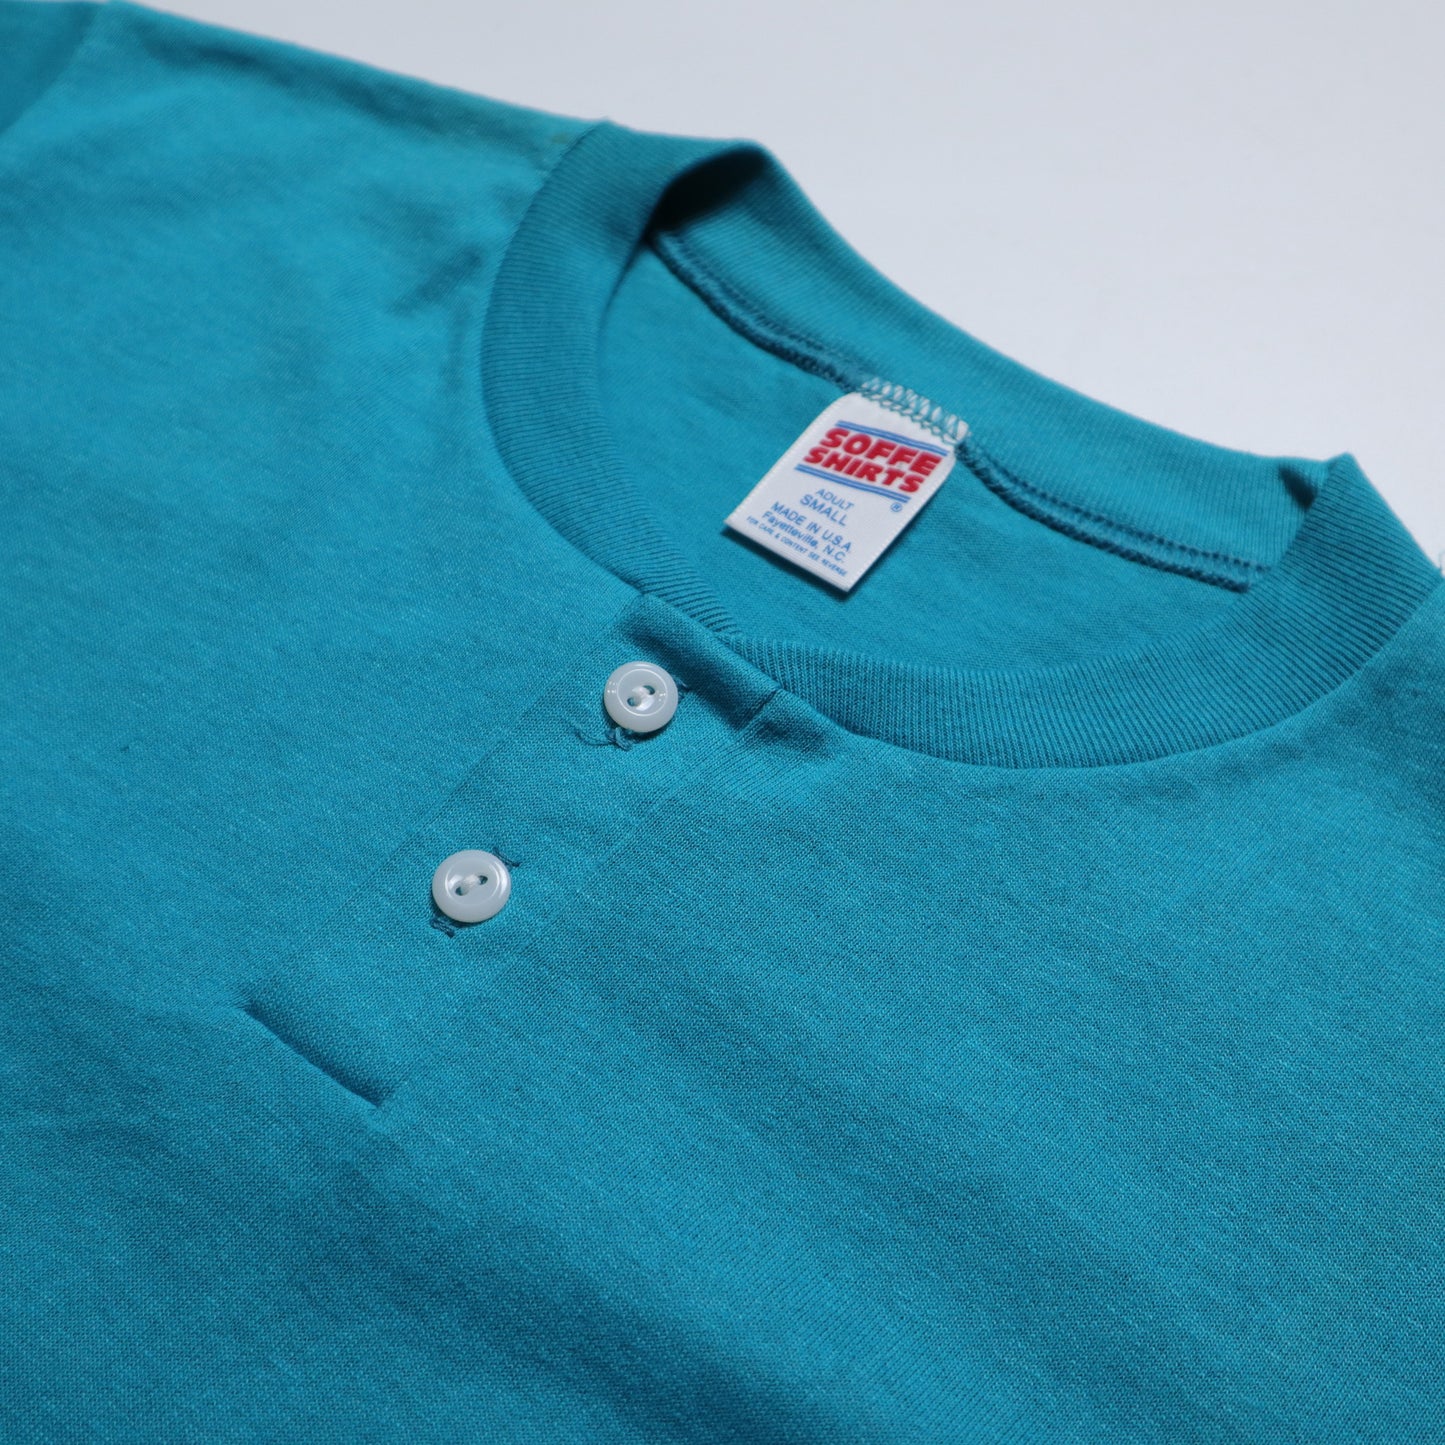 80/90s アメリカ製 SOFFE Shirts ティール ヘンリーカラー Tシャツ